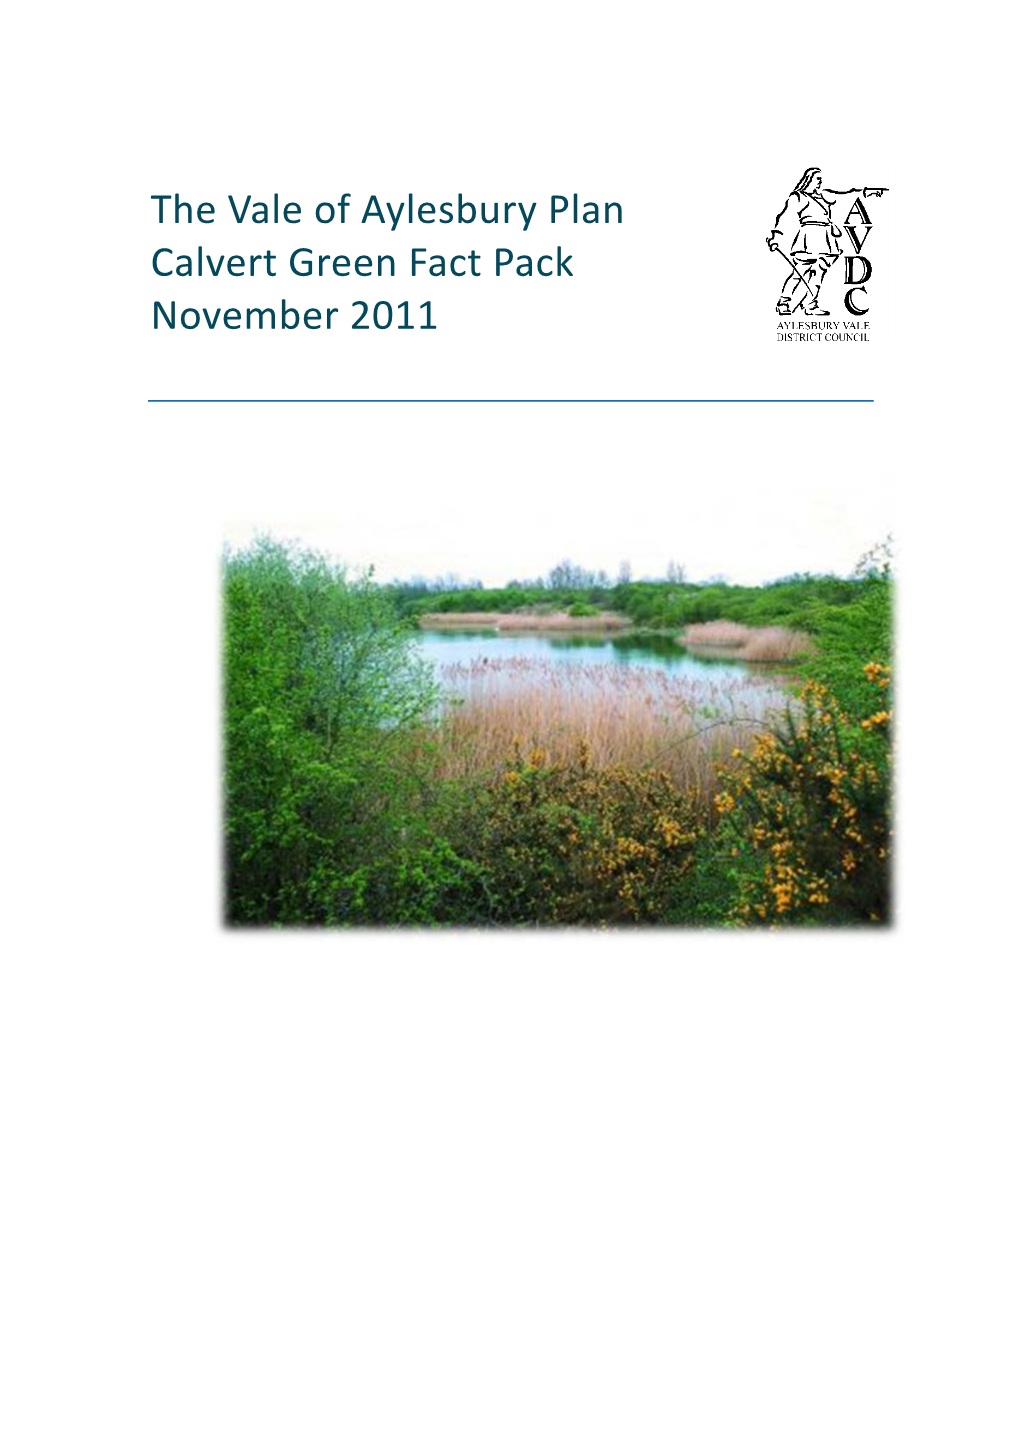 Calvert Green Fact Pack November 2011